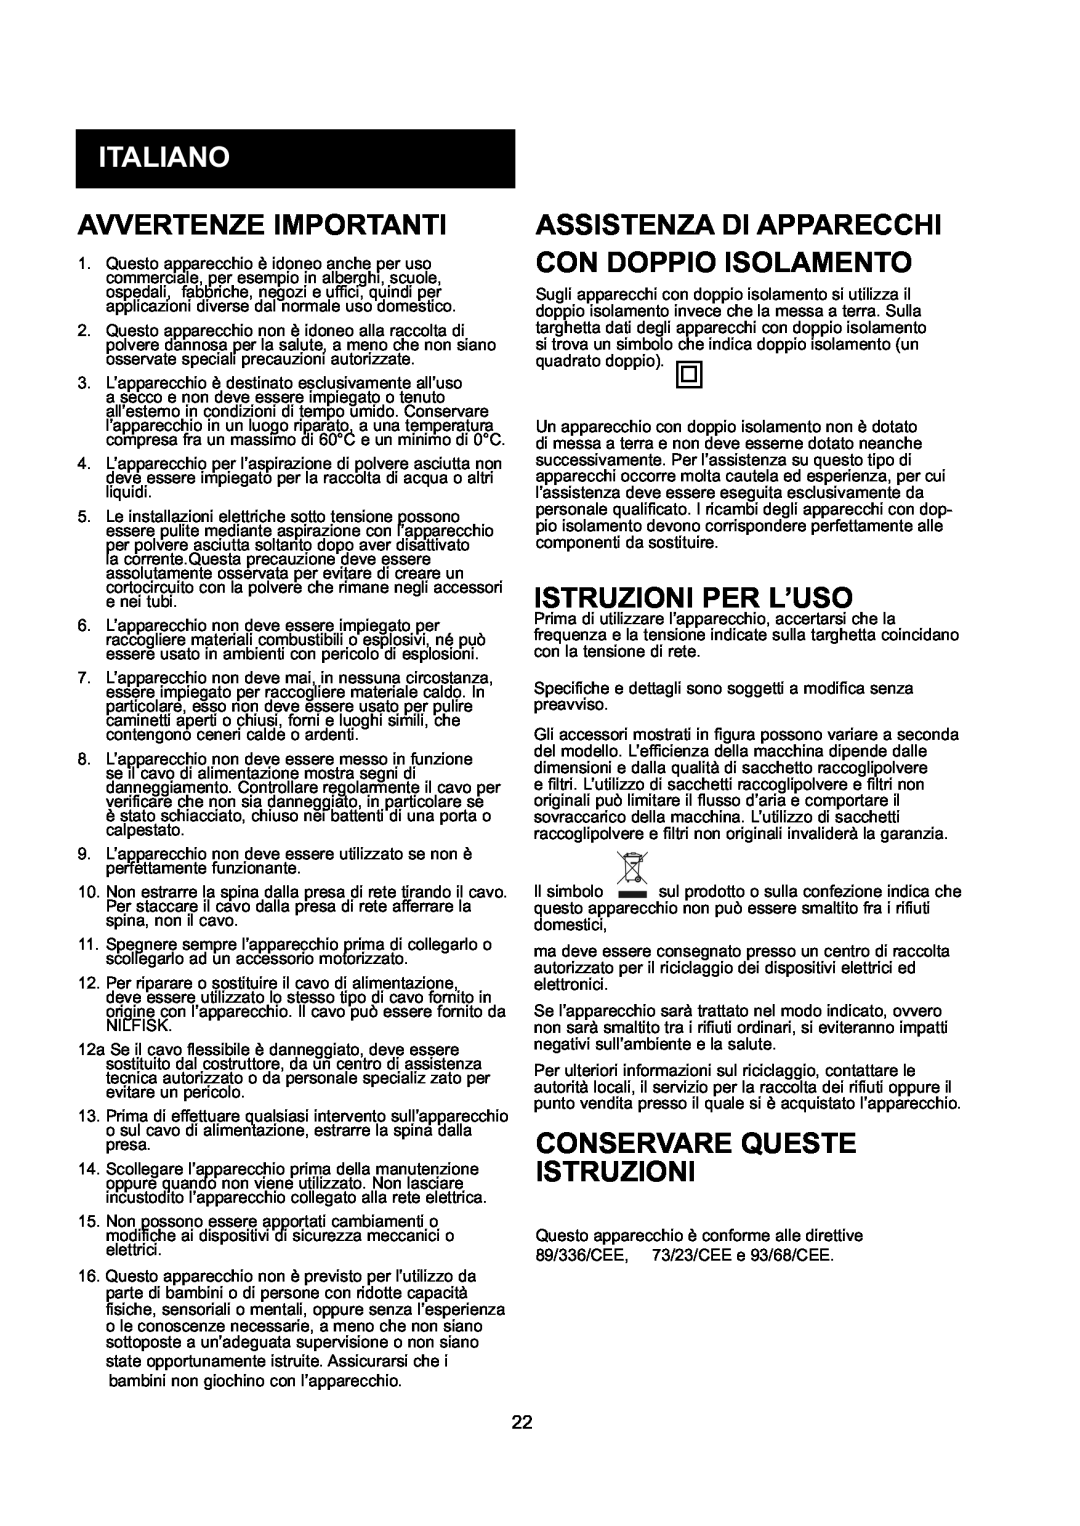 Nilfisk-ALTO GD 10 Back, GD 5 Back manual Italiano, Avvertenze Importanti, Assistenza Di Apparecchi Con Doppio Isolamento 